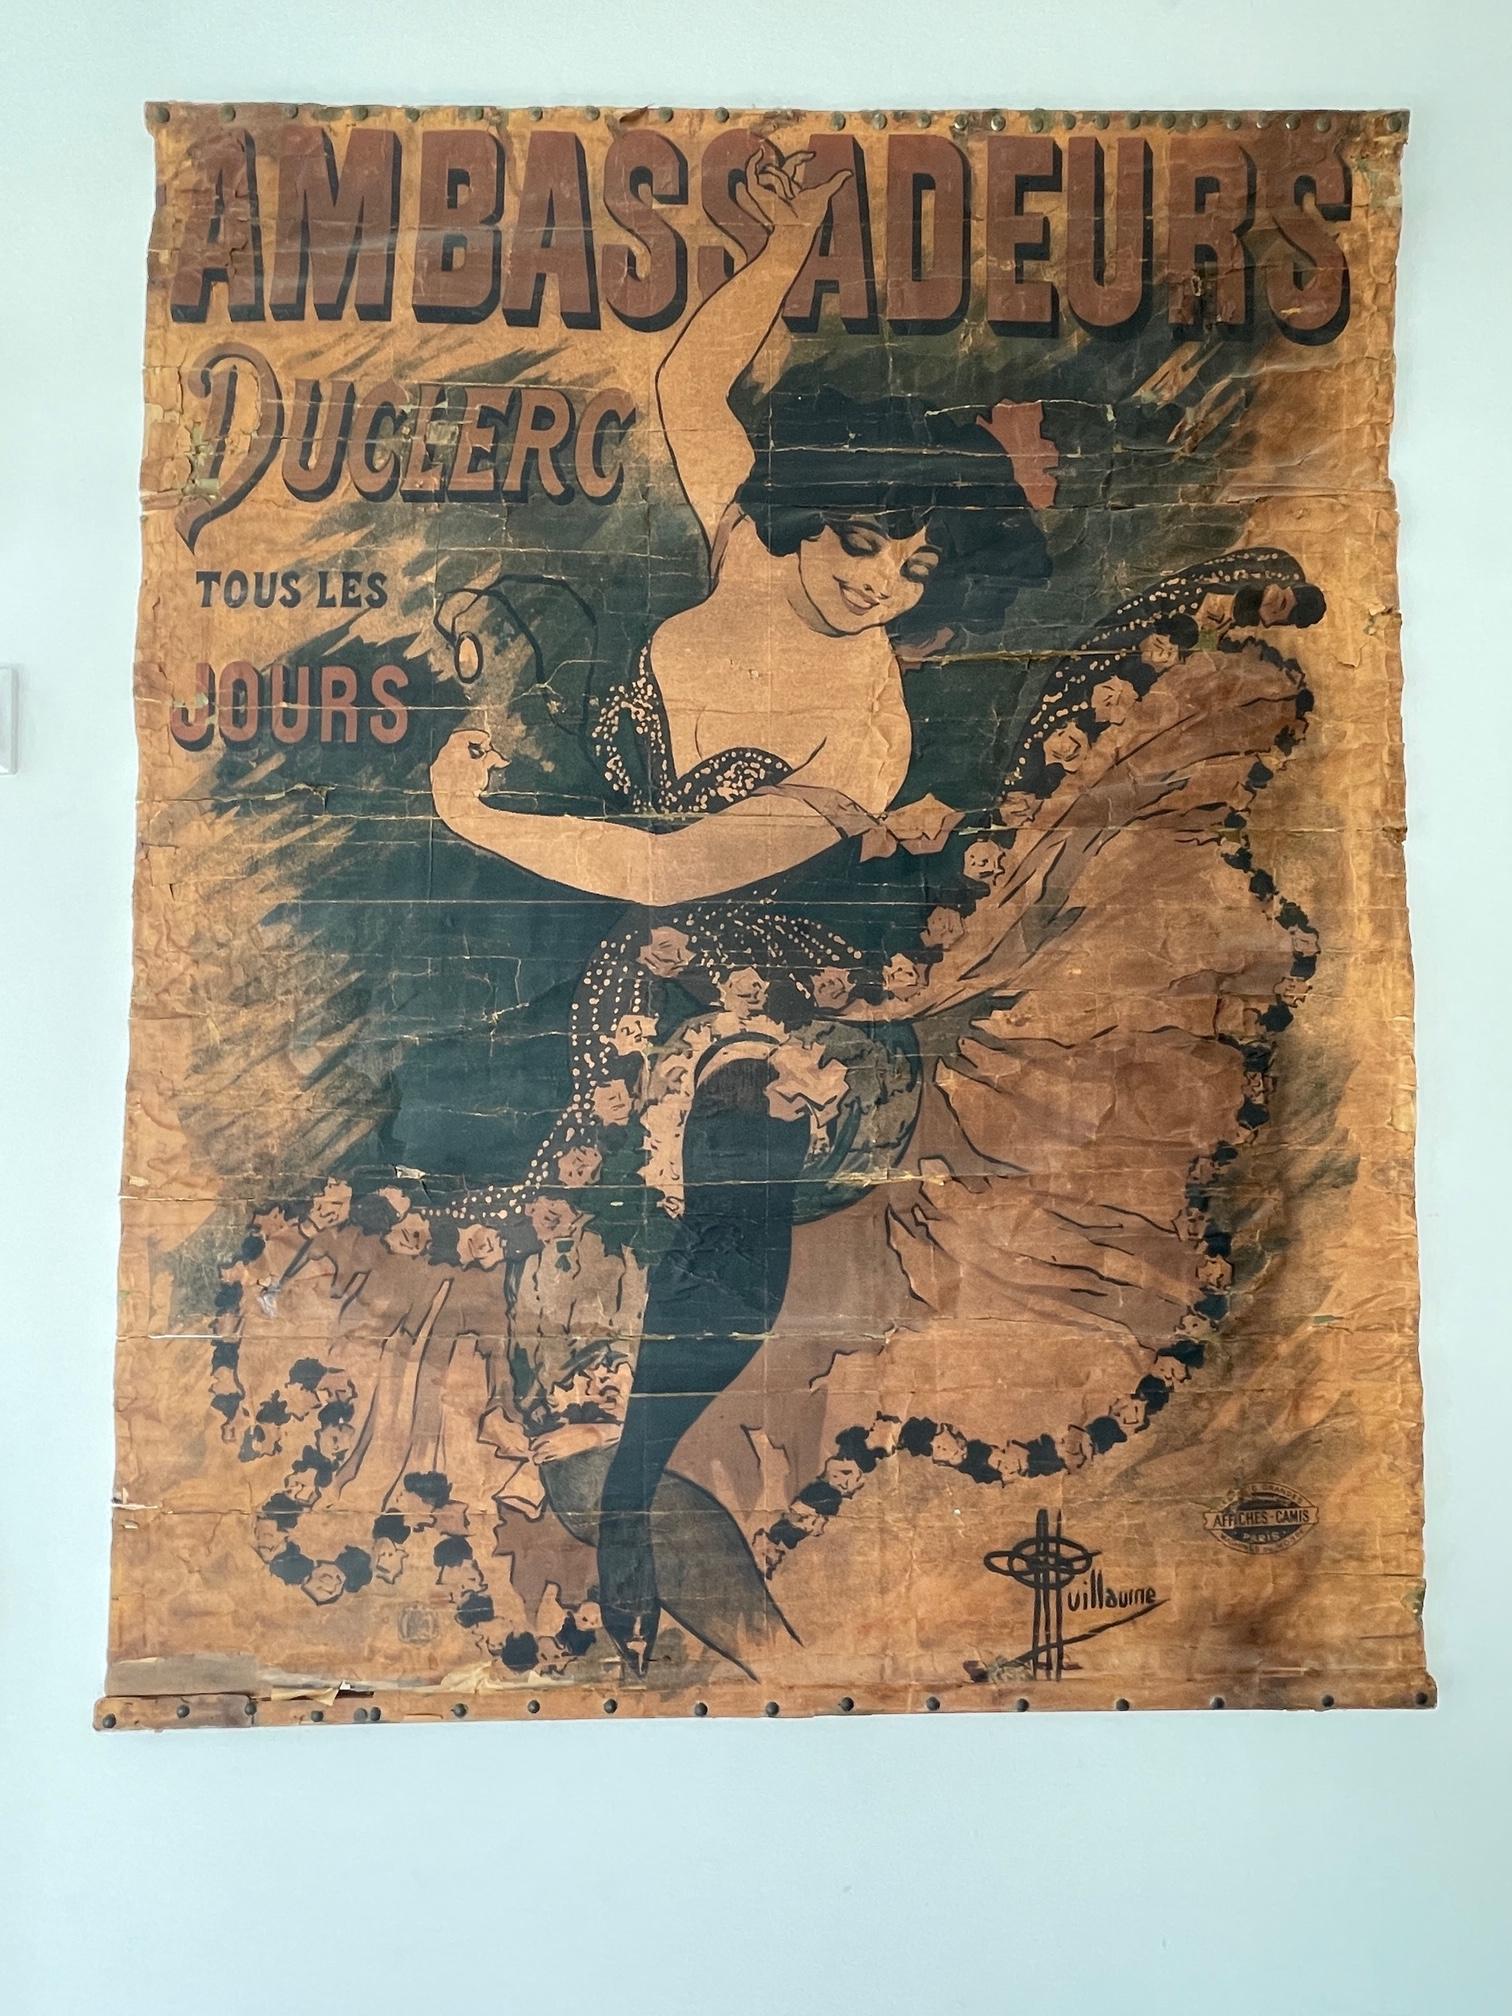 Late 19th Century 1894 Antique affiche / poster Ambassadeurs Duclerc tous les jours - Guillaume For Sale